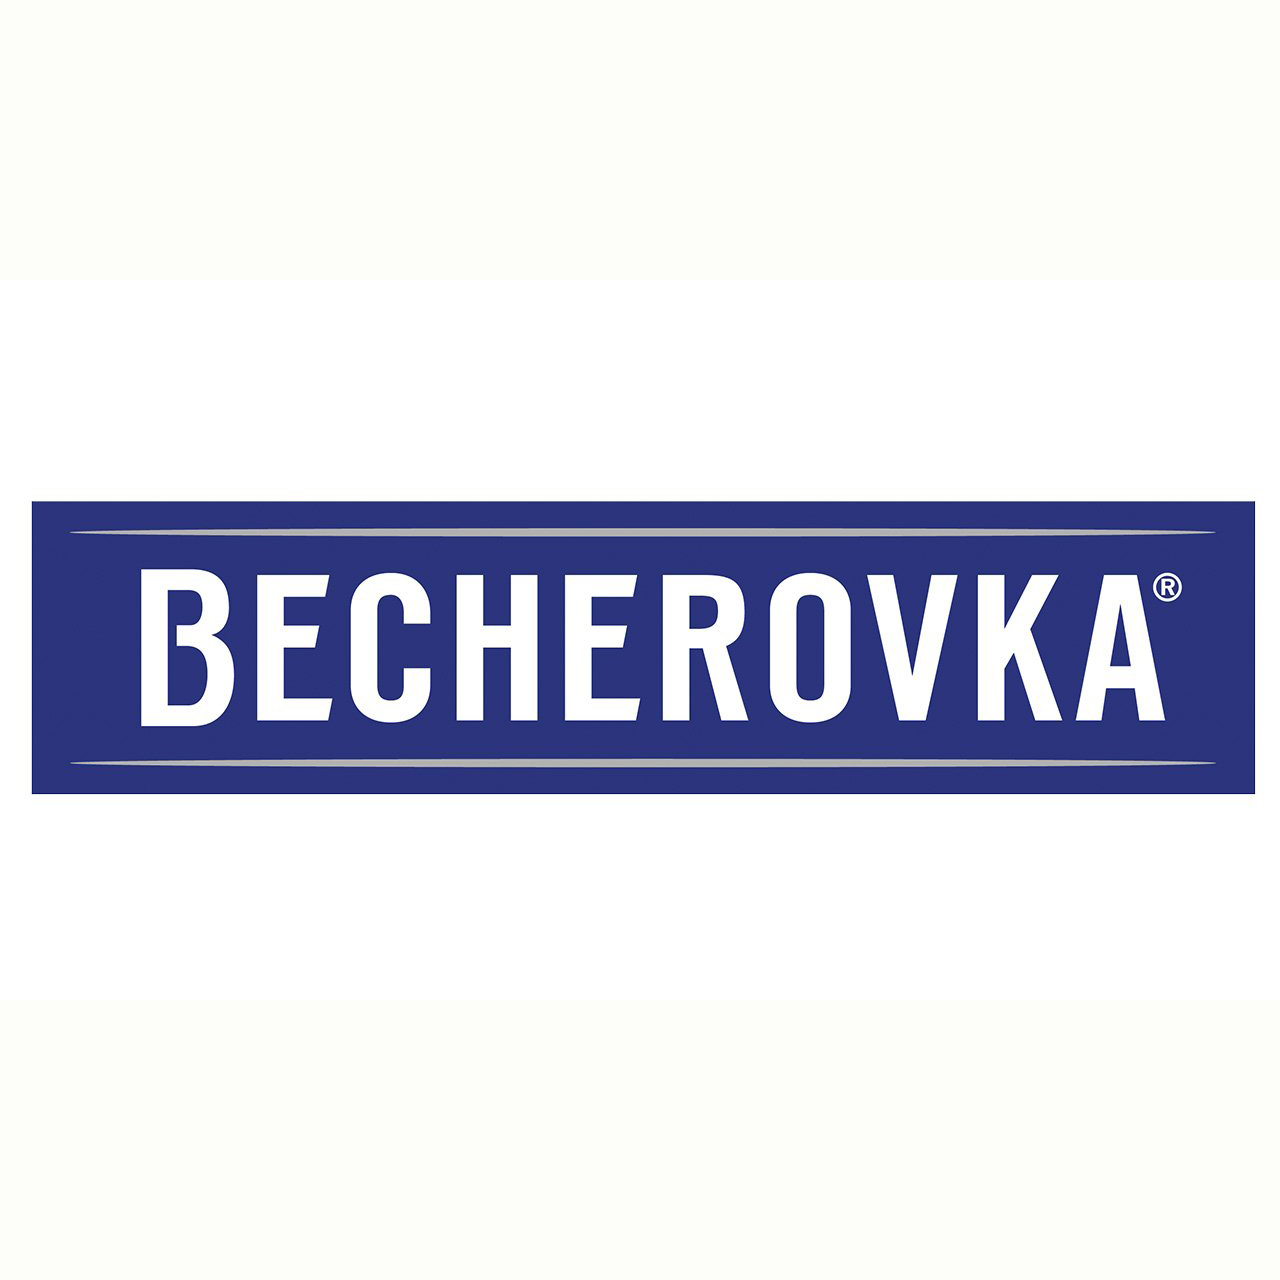 Ликер Becherovka набор 0,7л 38% + 1 металлическая чашка Ликеры в RUMKA. Тел: 067 173 0358. Доставка, гарантия, лучшие цены!, фото4